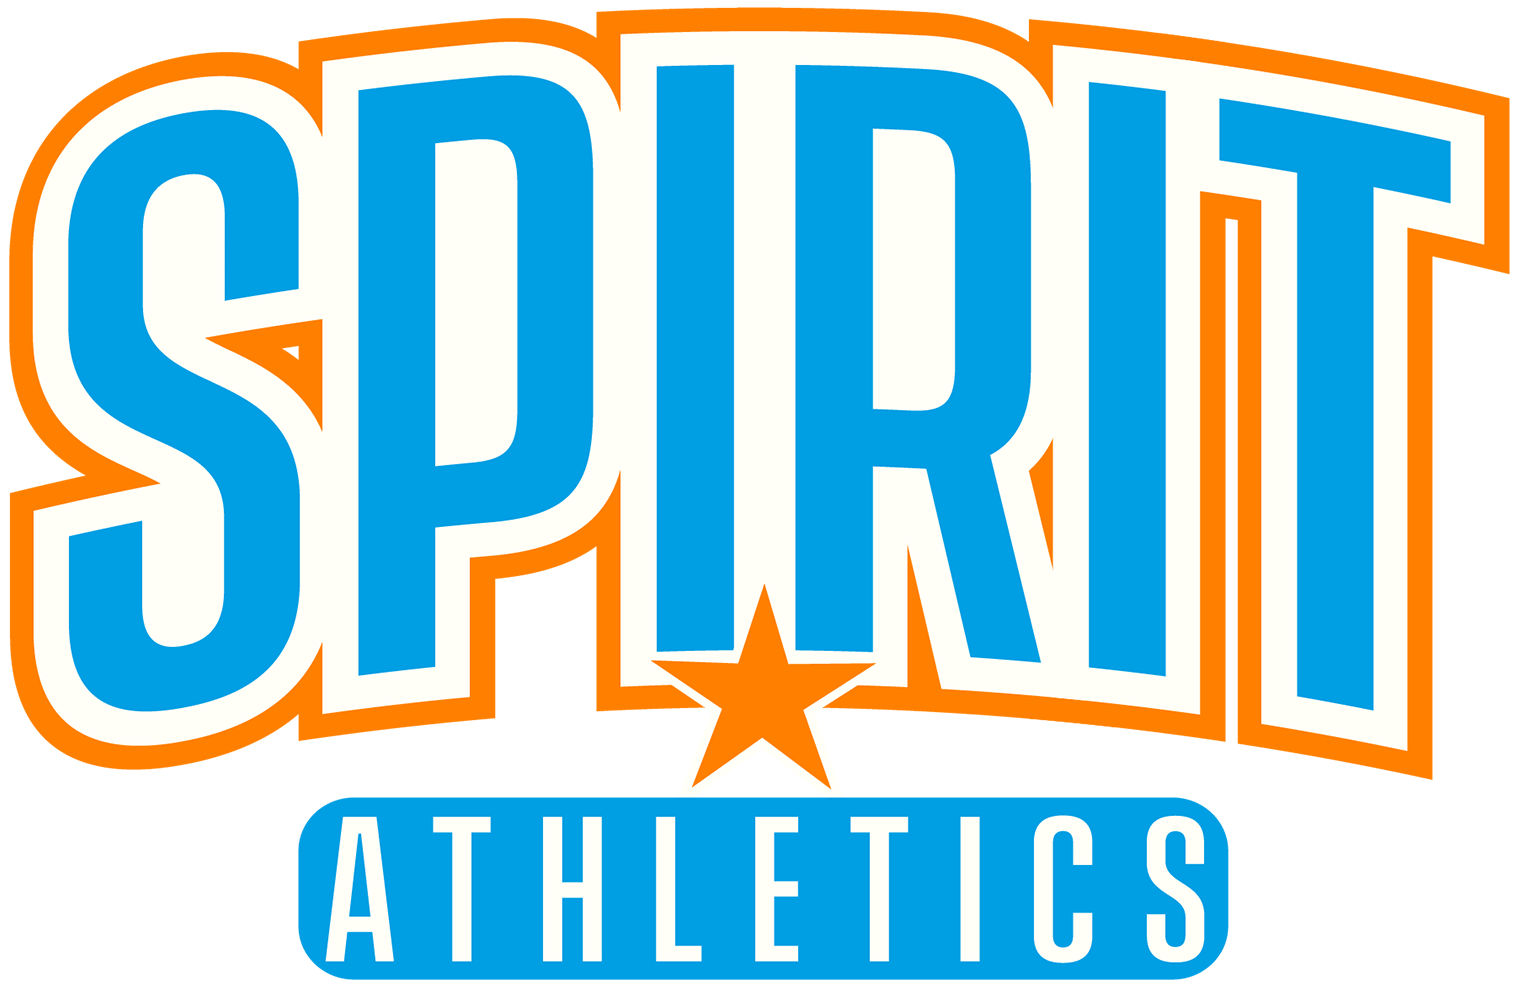 Spirit Athletics